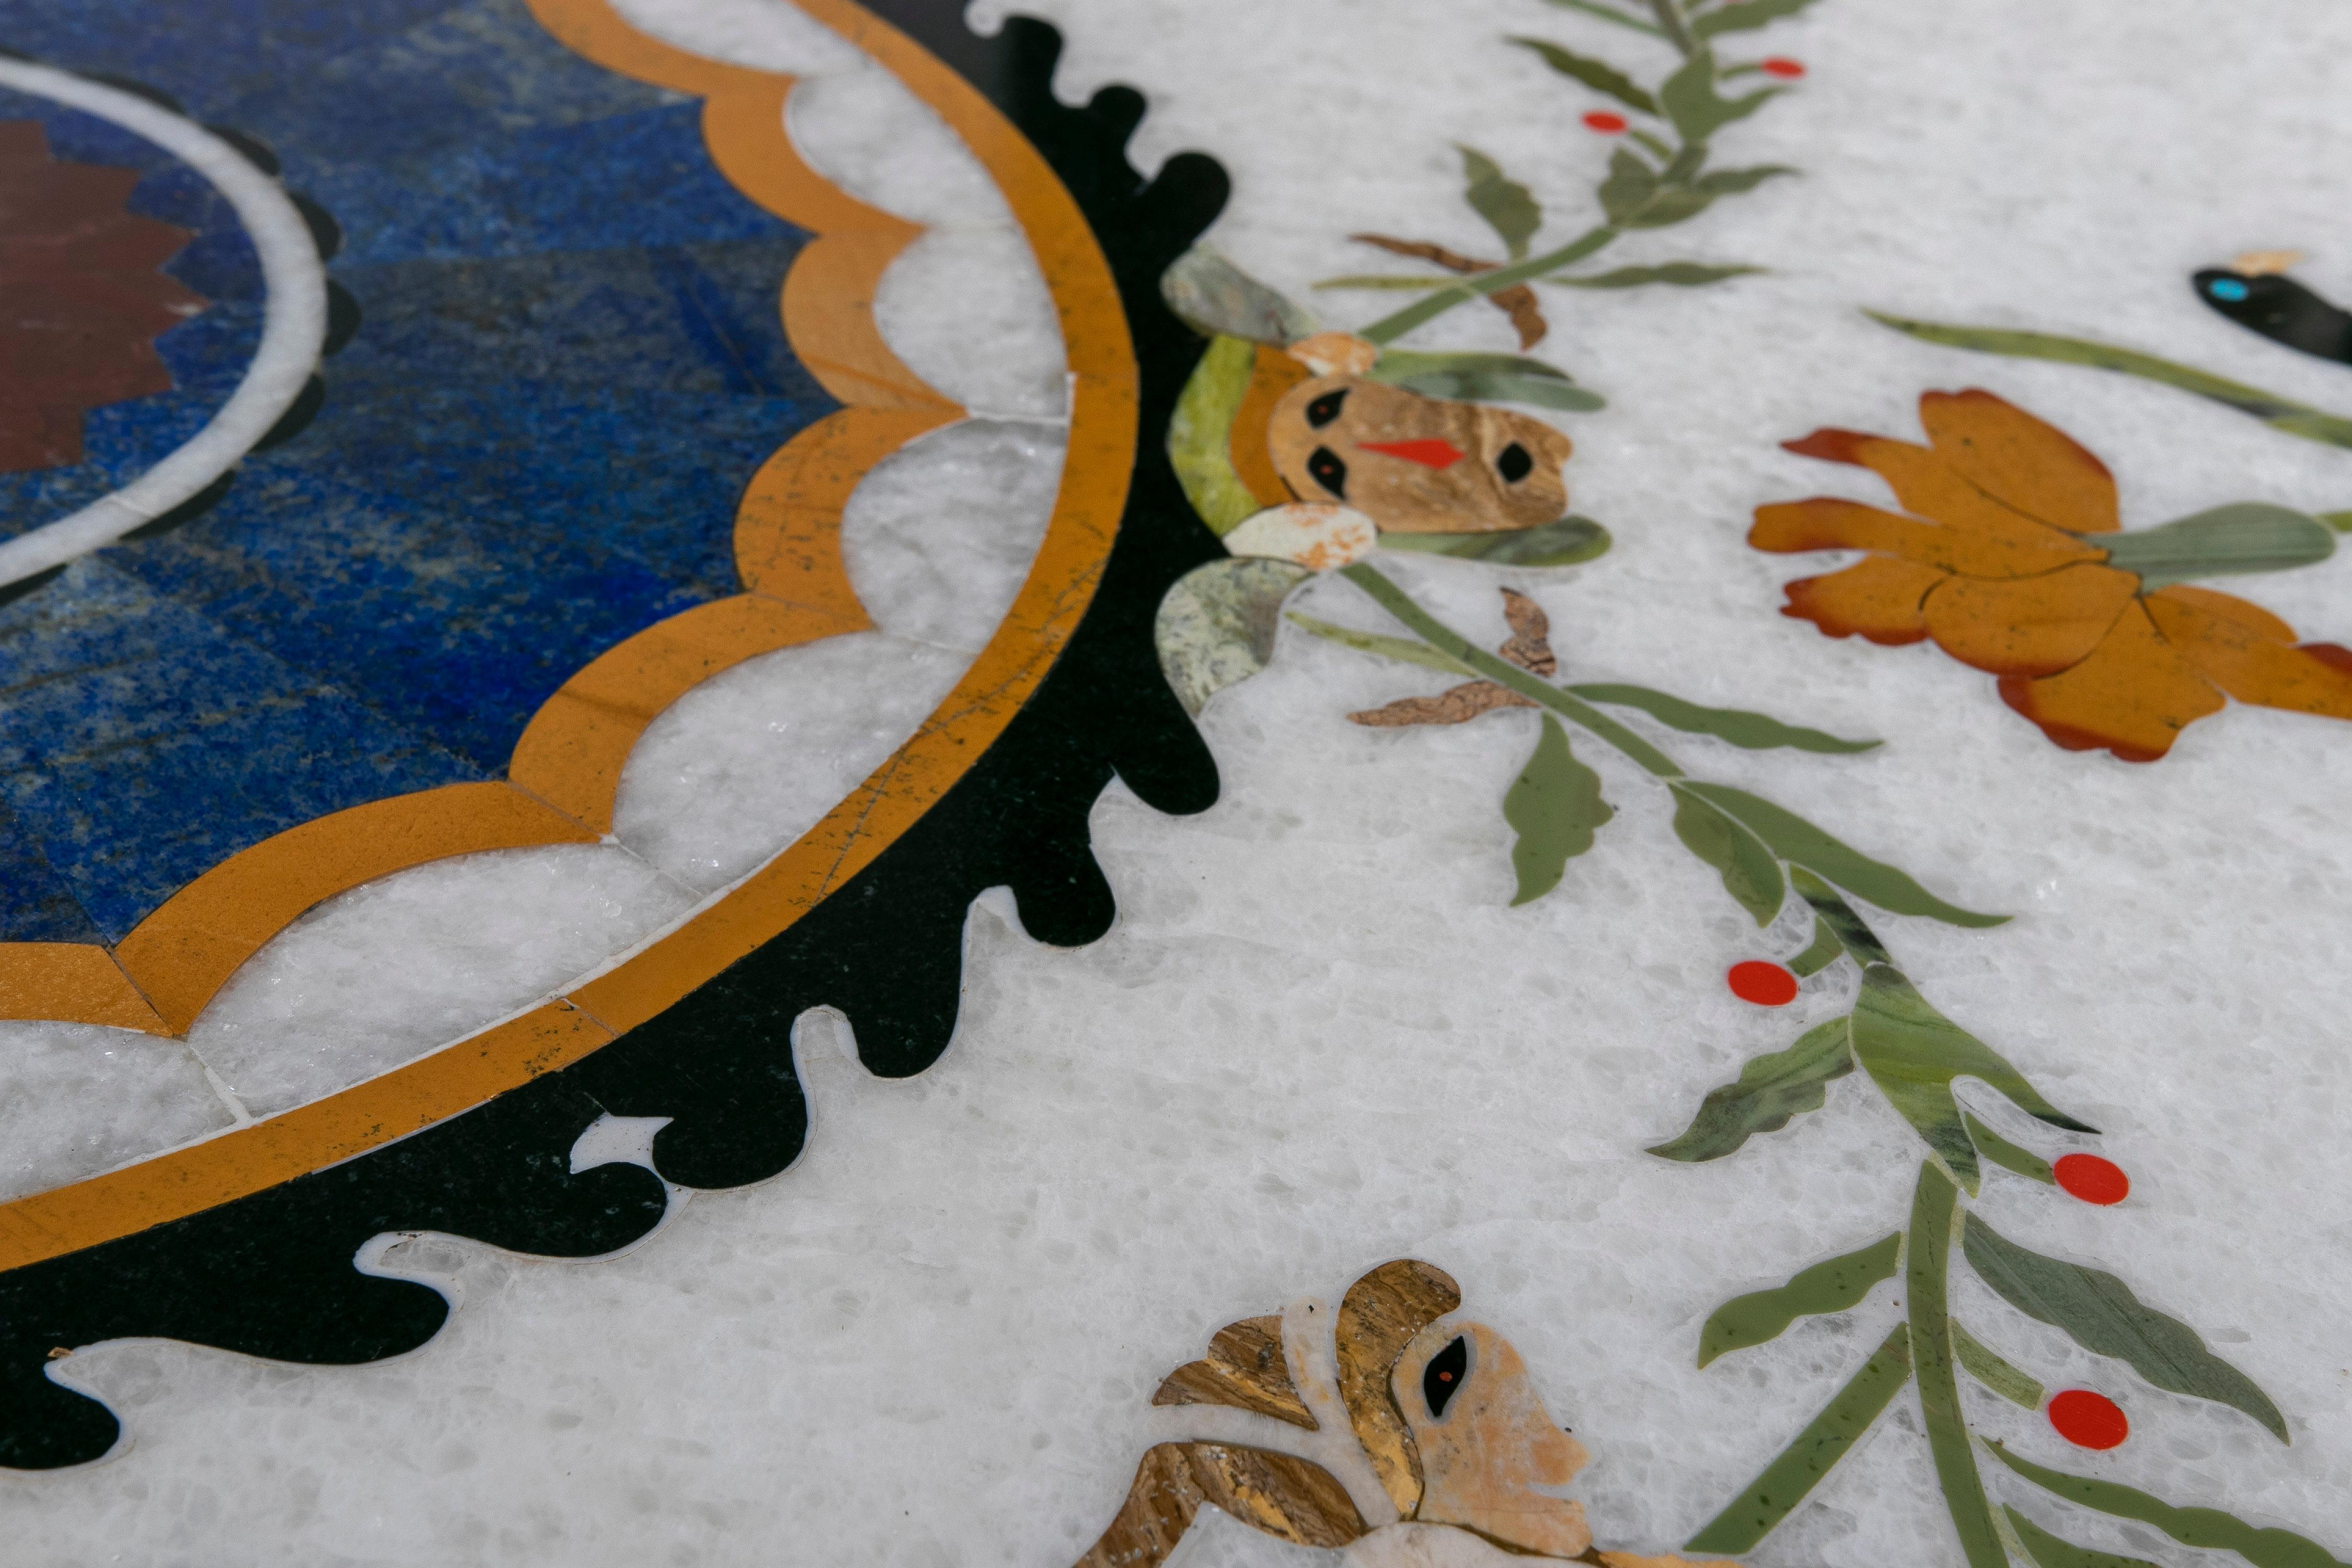 Handgefertigte Tischplatte aus spanischem Pietra Dura-Mosaik aus den 1990er Jahren mit weißem Marmor, Lapislazuli und einer Auswahl an farbigen Marmoren.

Dekoriert mit kunstvollen Stillleben und klassischen römischen Frauenszenen.